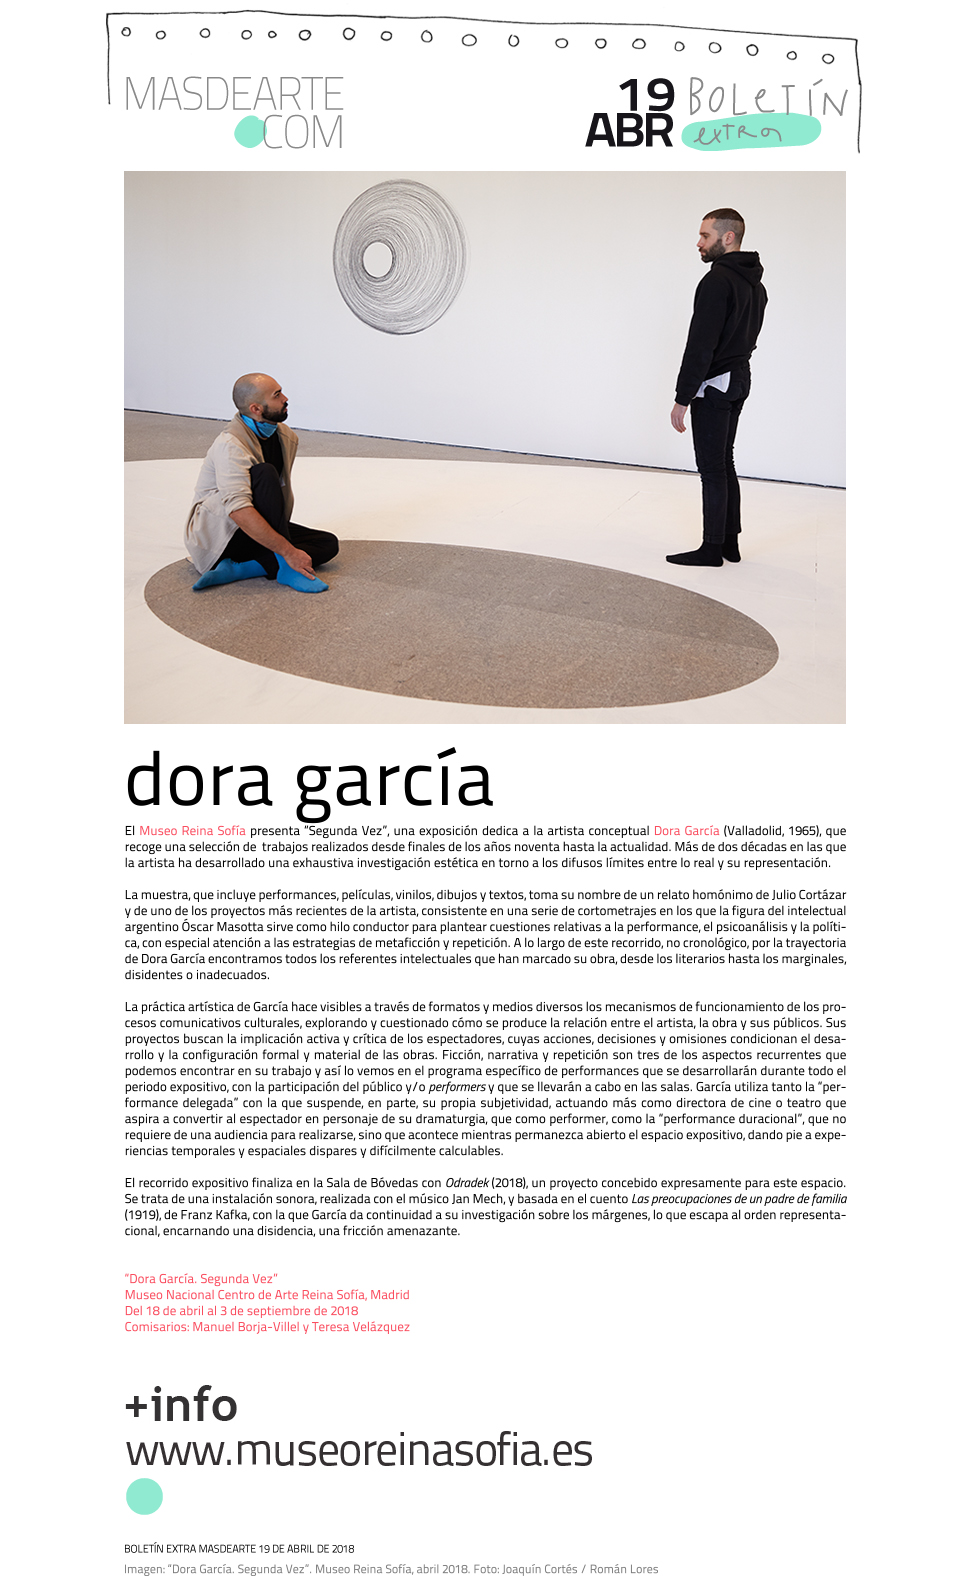 Noticias masdearte: Exposición de Dora García. Segunda
 Vez, en el Museo Reina Sofía. Del 18 de abril al 3 de septiembre de 2018